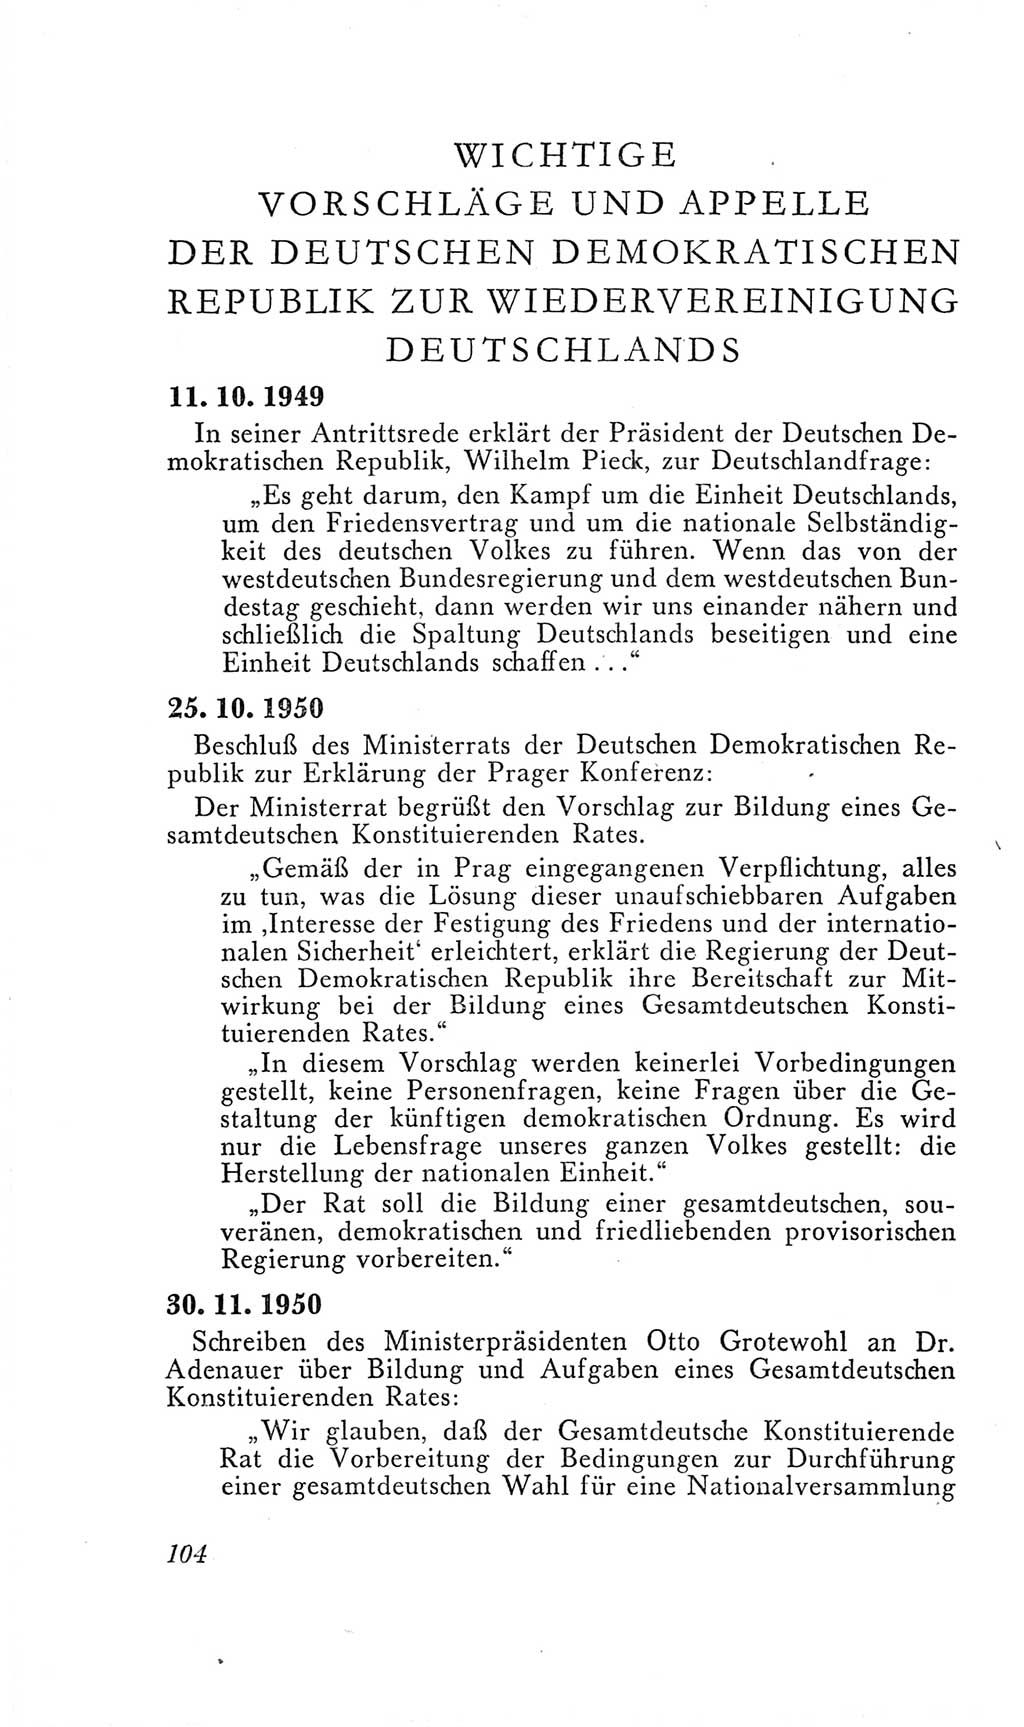 Handbuch der Volkskammer (VK) der Deutschen Demokratischen Republik (DDR), 2. Wahlperiode 1954-1958, Seite 104 (Hdb. VK. DDR, 2. WP. 1954-1958, S. 104)